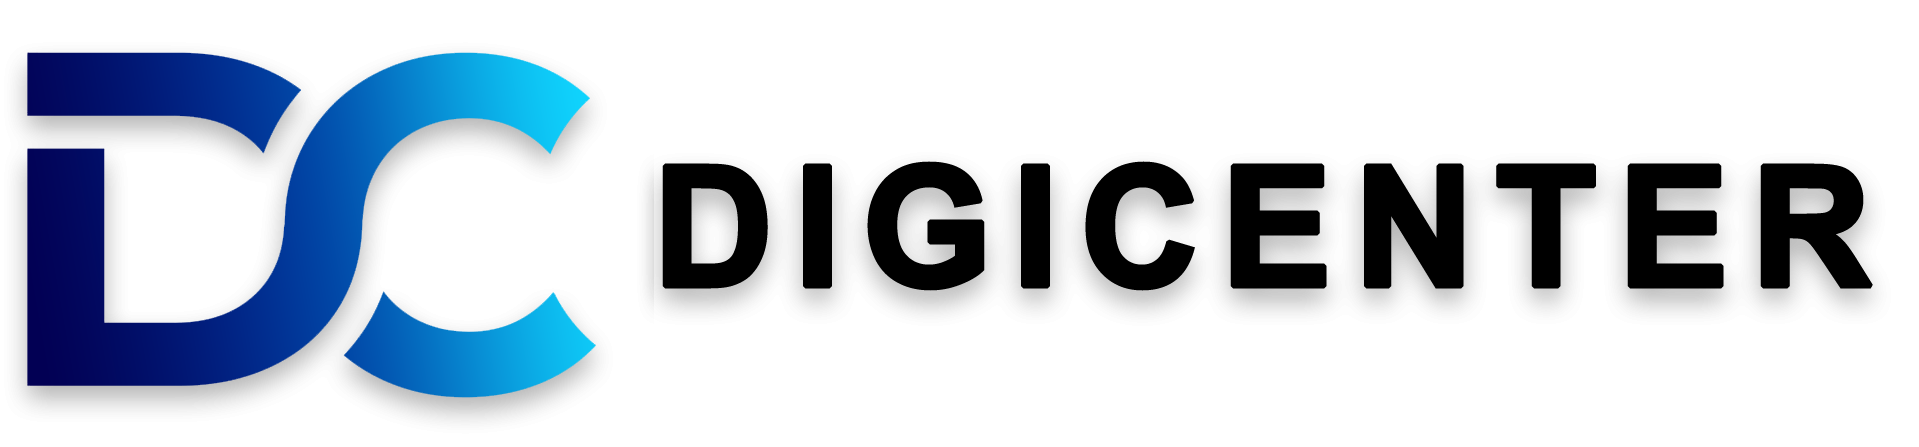 Digicenter_Logo